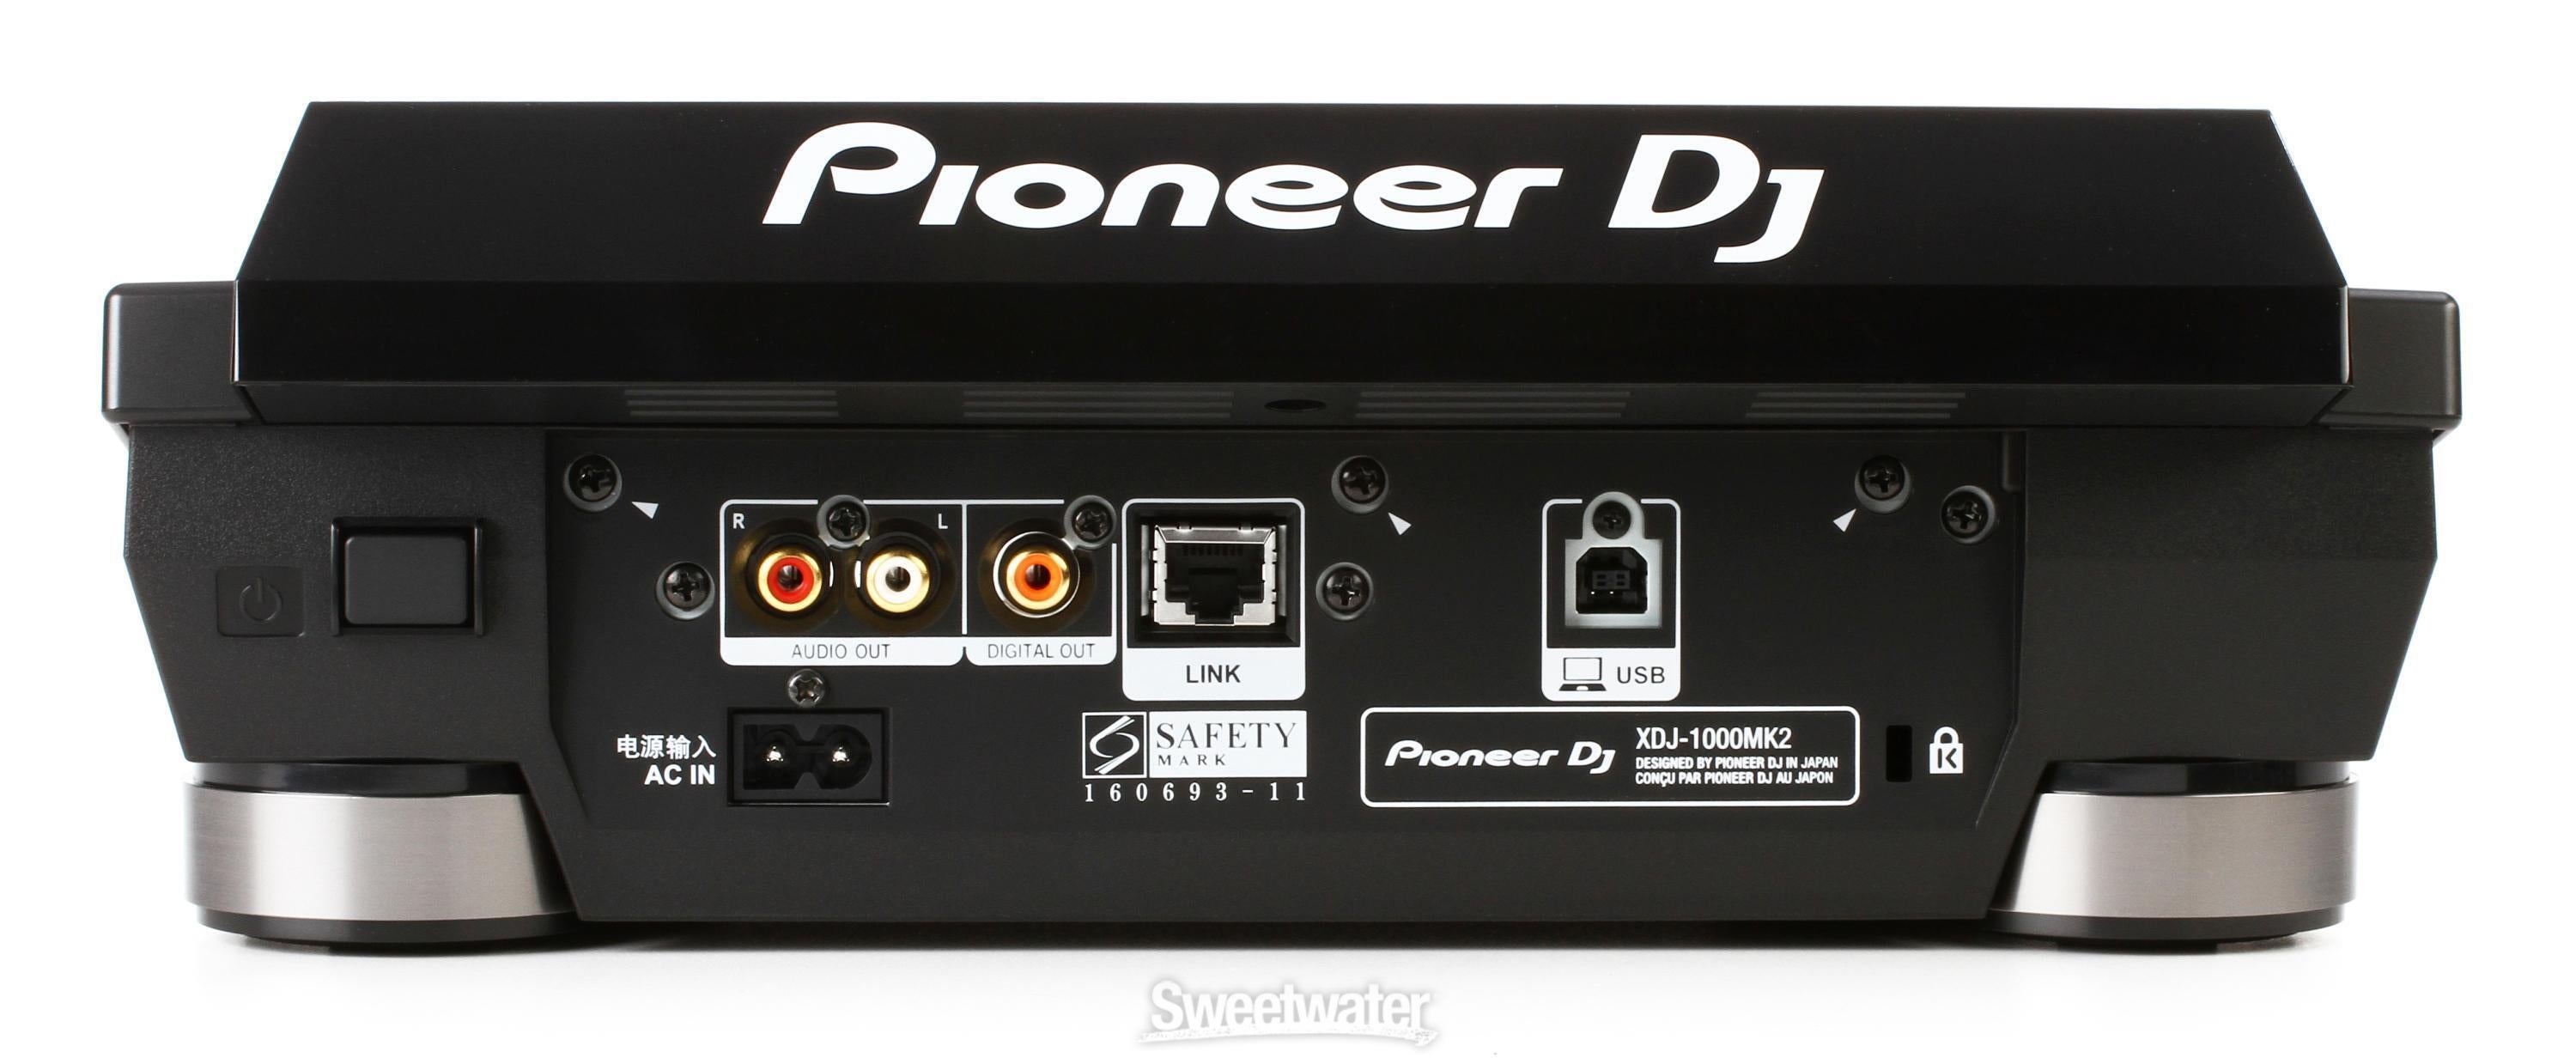 Pioneer DJ XDJ-1000MK2 Digital Performance DJ Media Player 